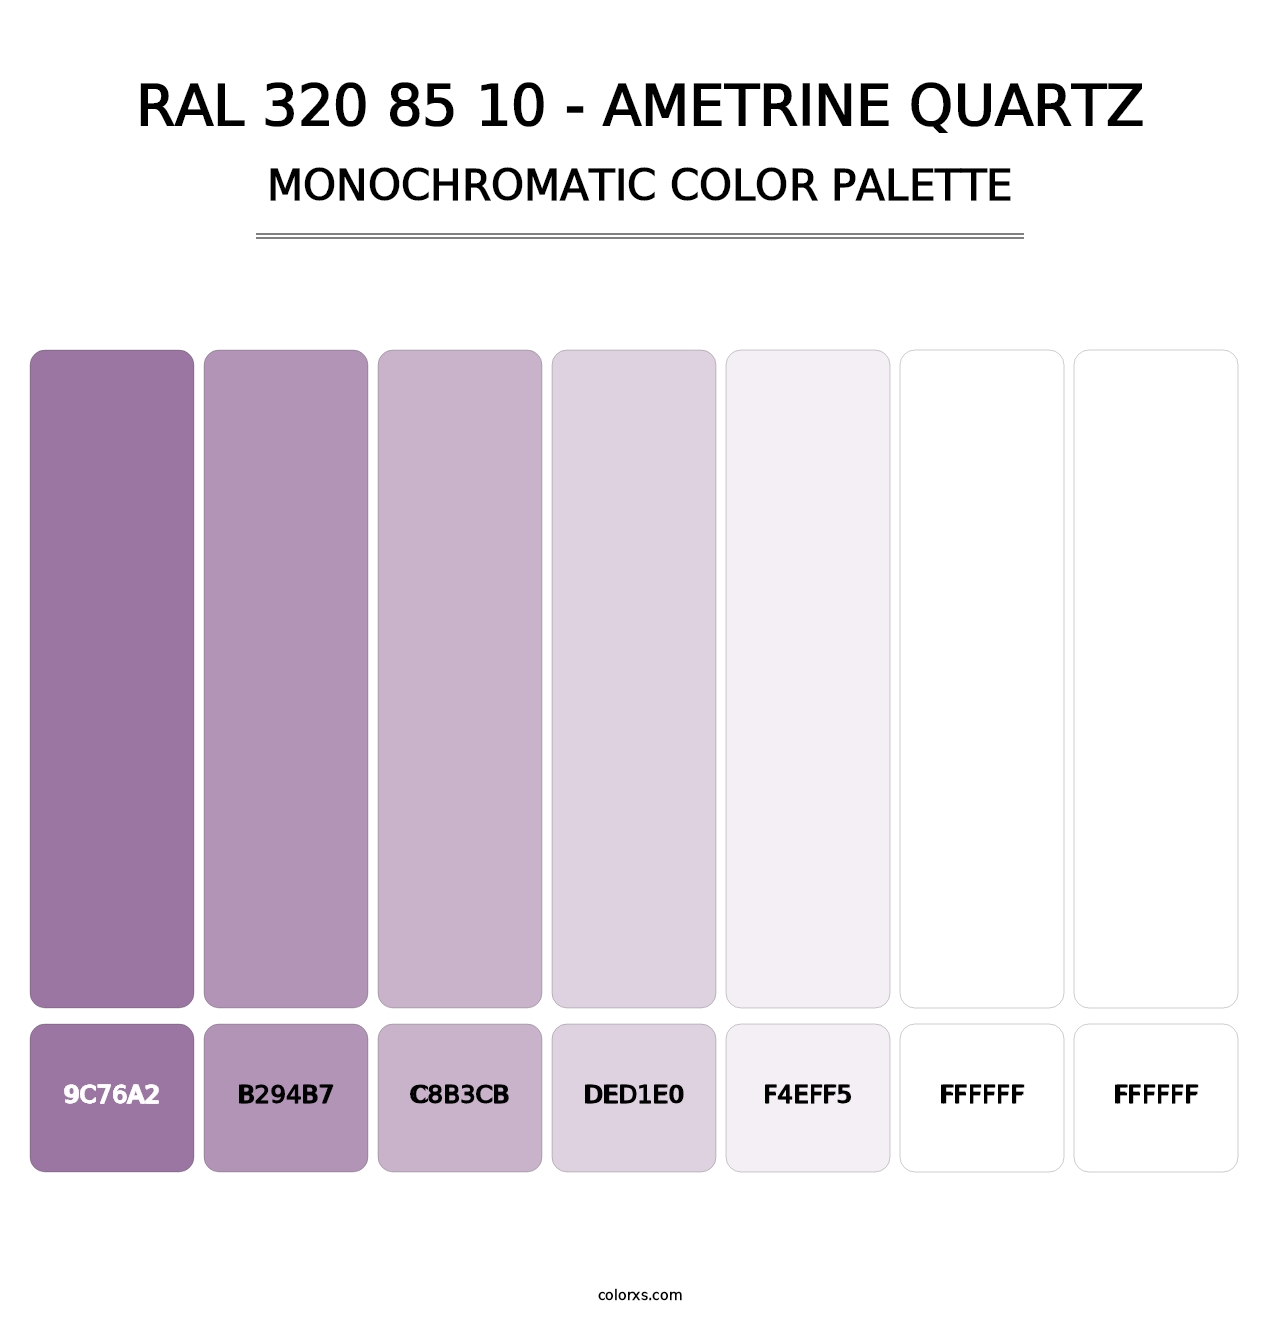 RAL 320 85 10 - Ametrine Quartz - Monochromatic Color Palette